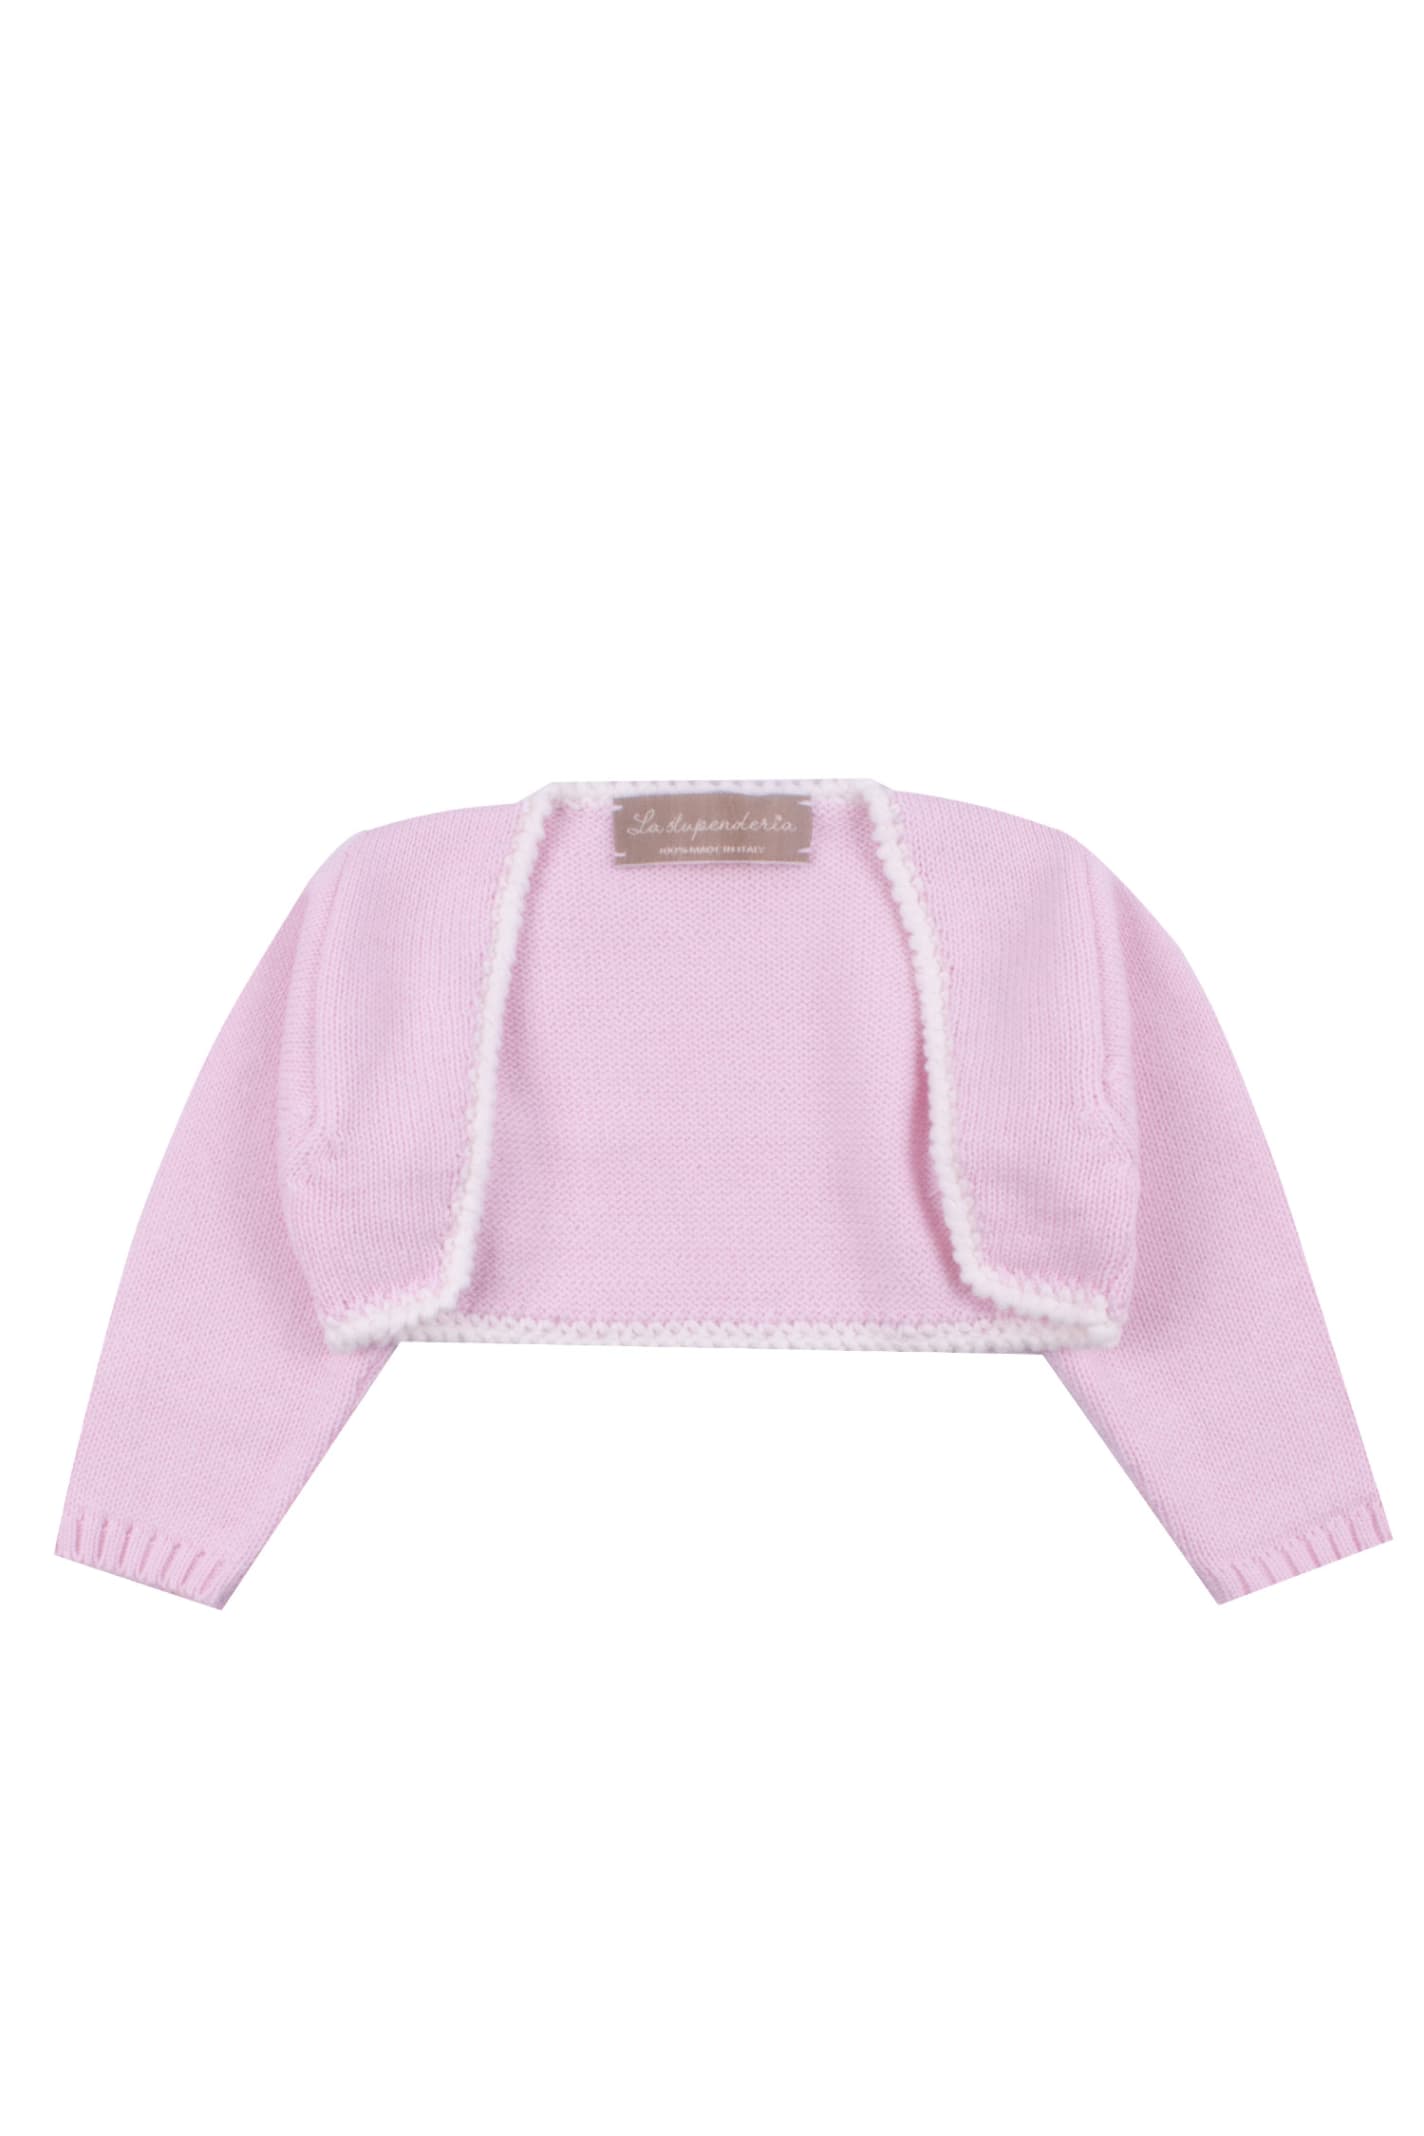 La Stupenderia Kids' Cotton Knit Sweater In Rose